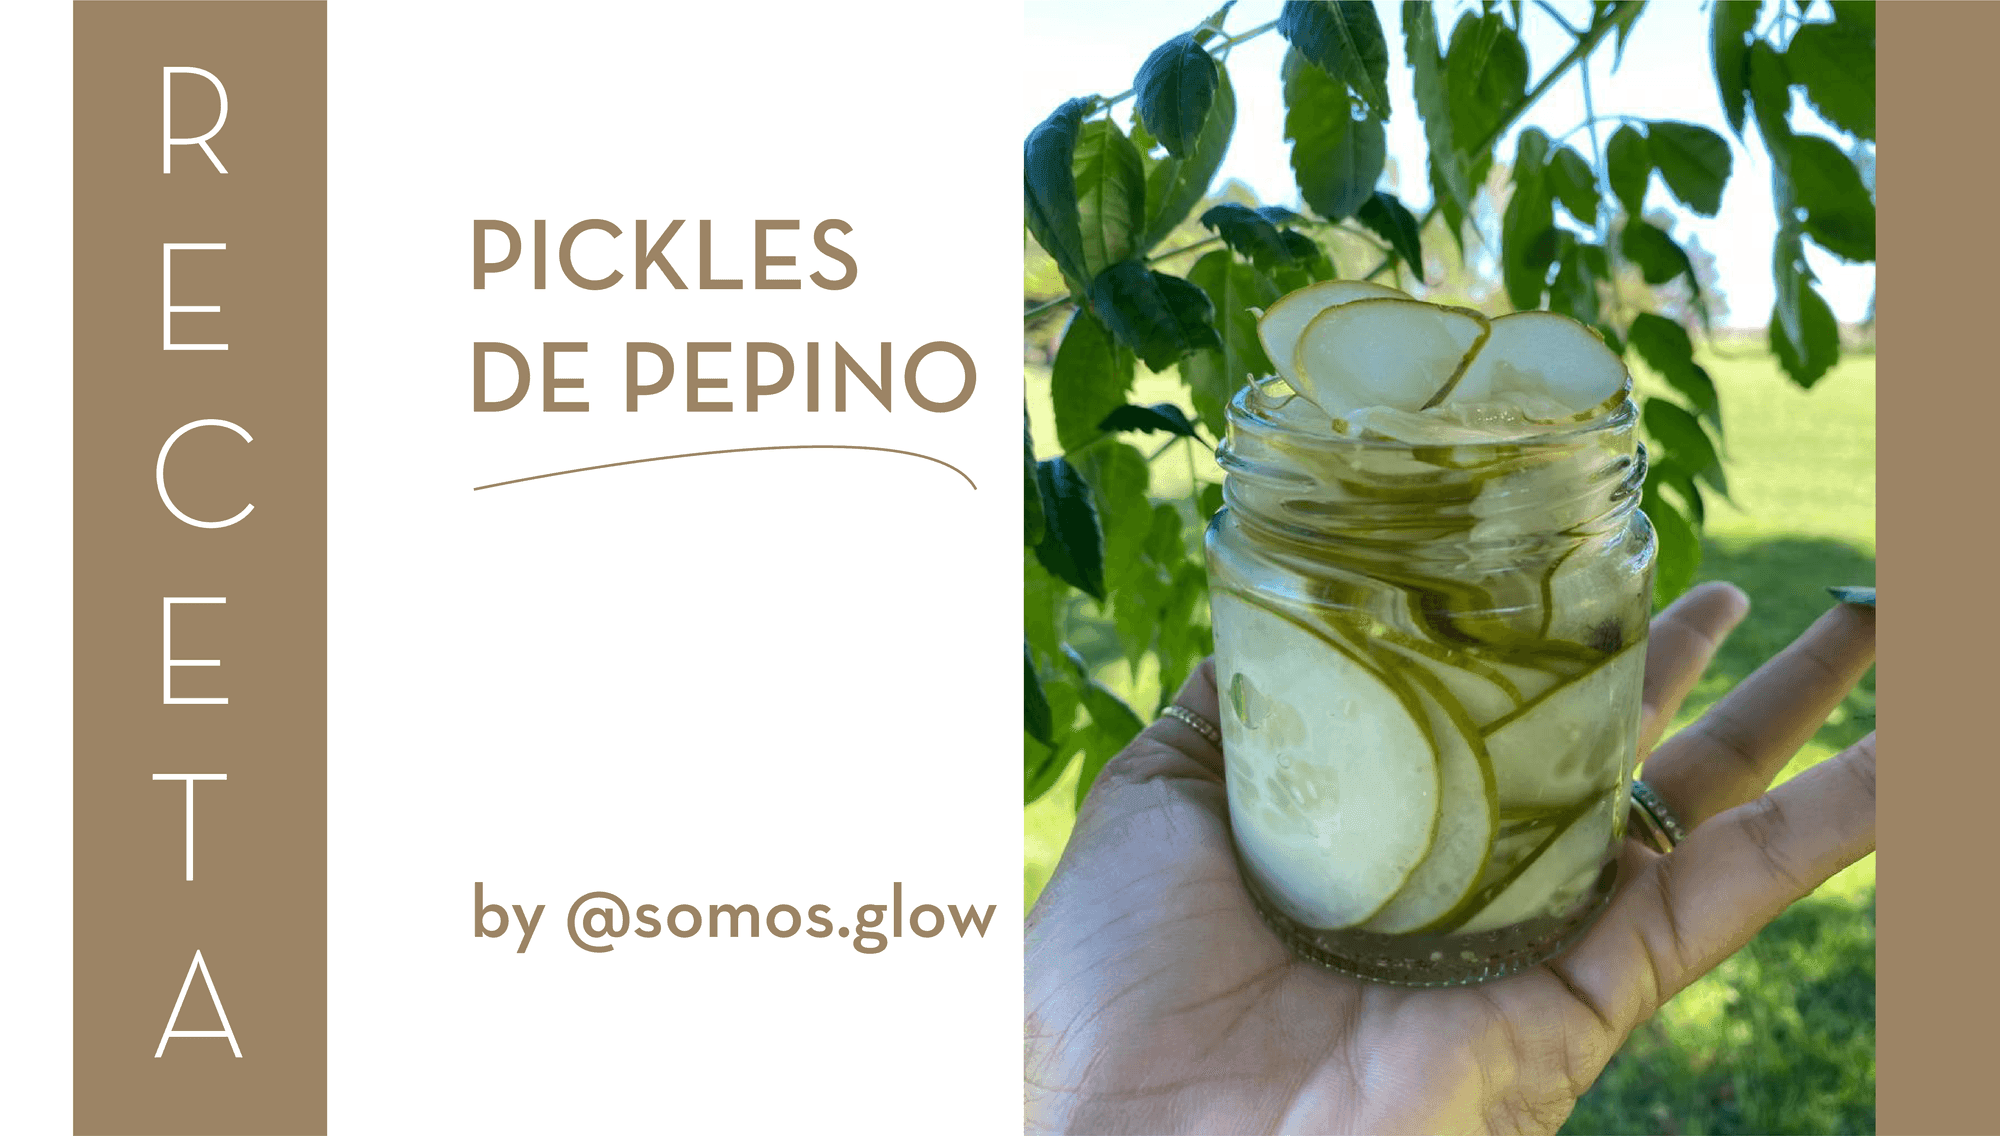 Pickles de pepinos